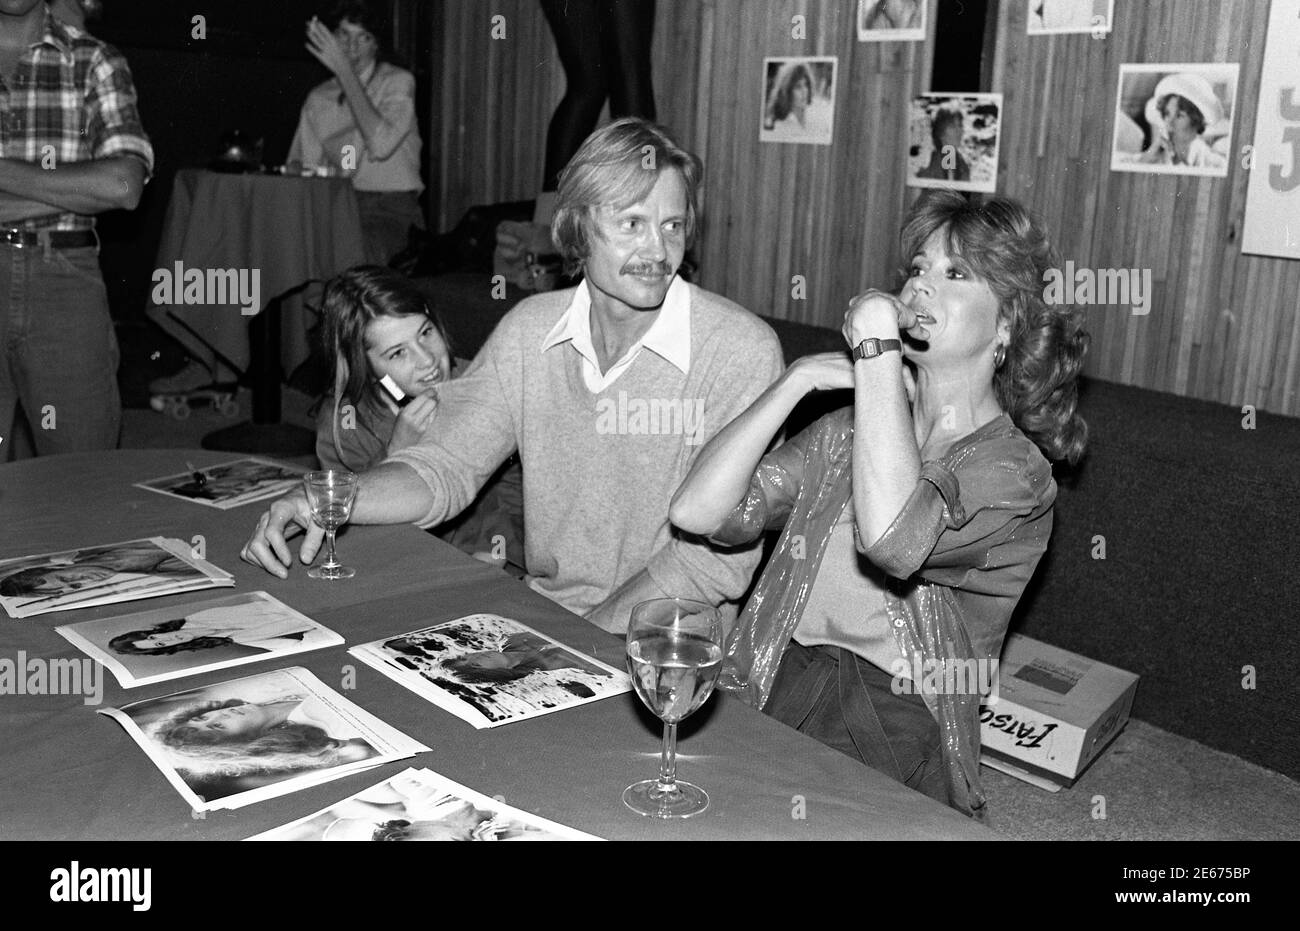 Jon Voigt et Jane Fonda autogrpahing photos à l'événement flippers Roller Disco en soutien à ERA, LosAngeles, oct. 29, 1978 Banque D'Images